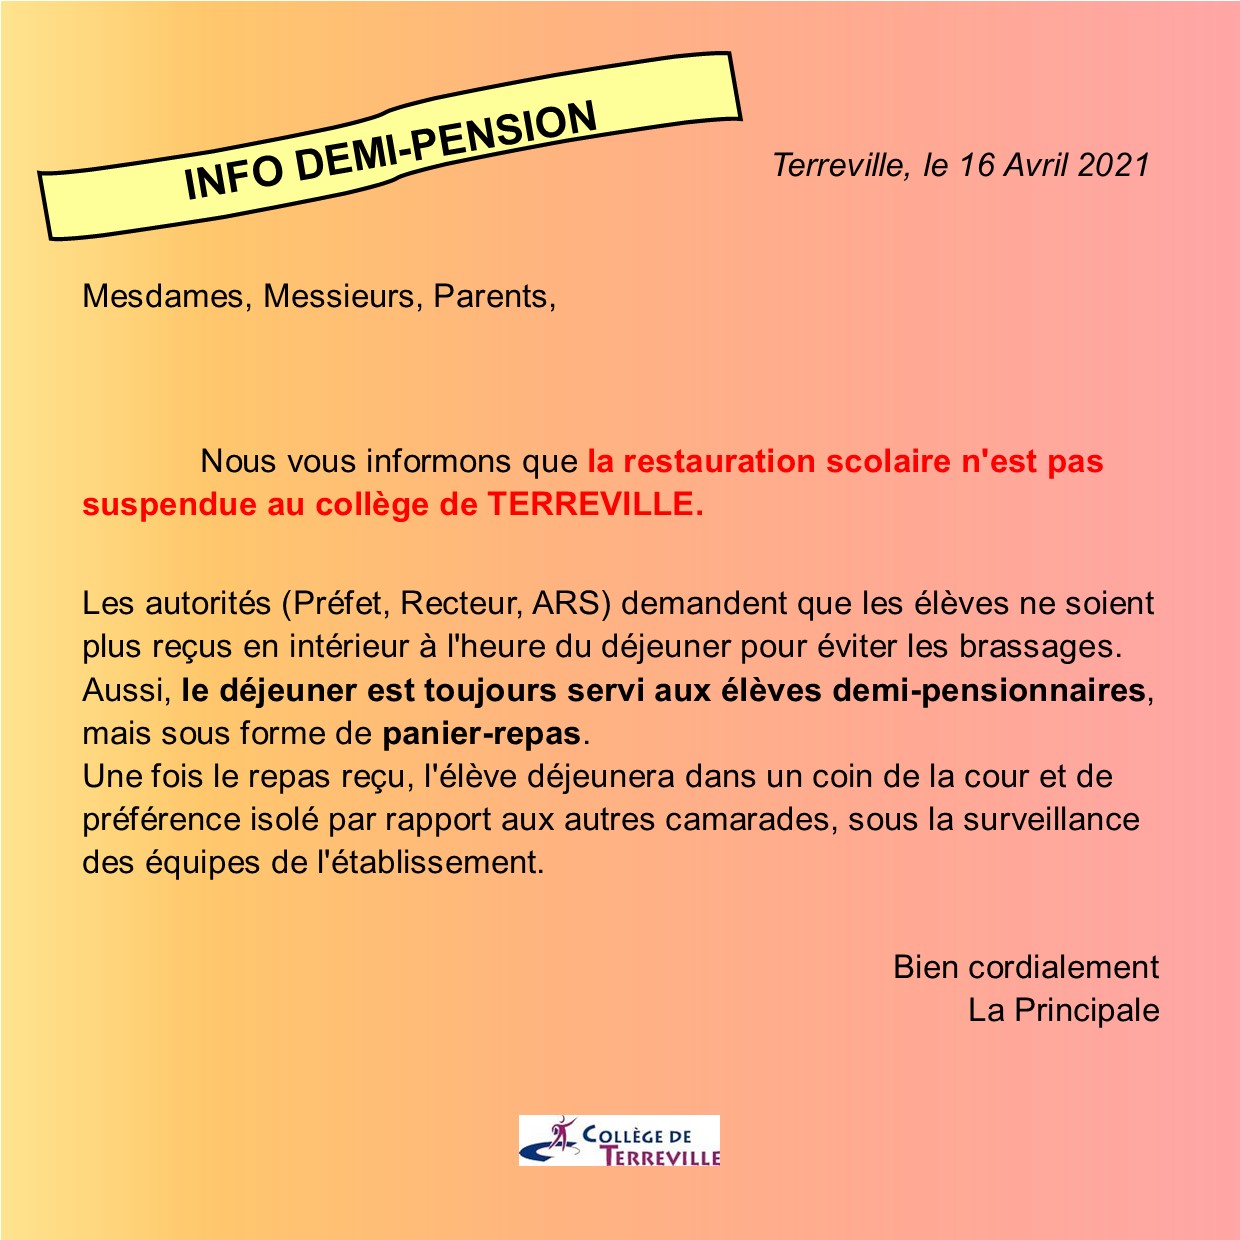 Info_demi-pension_Terreville.jpg